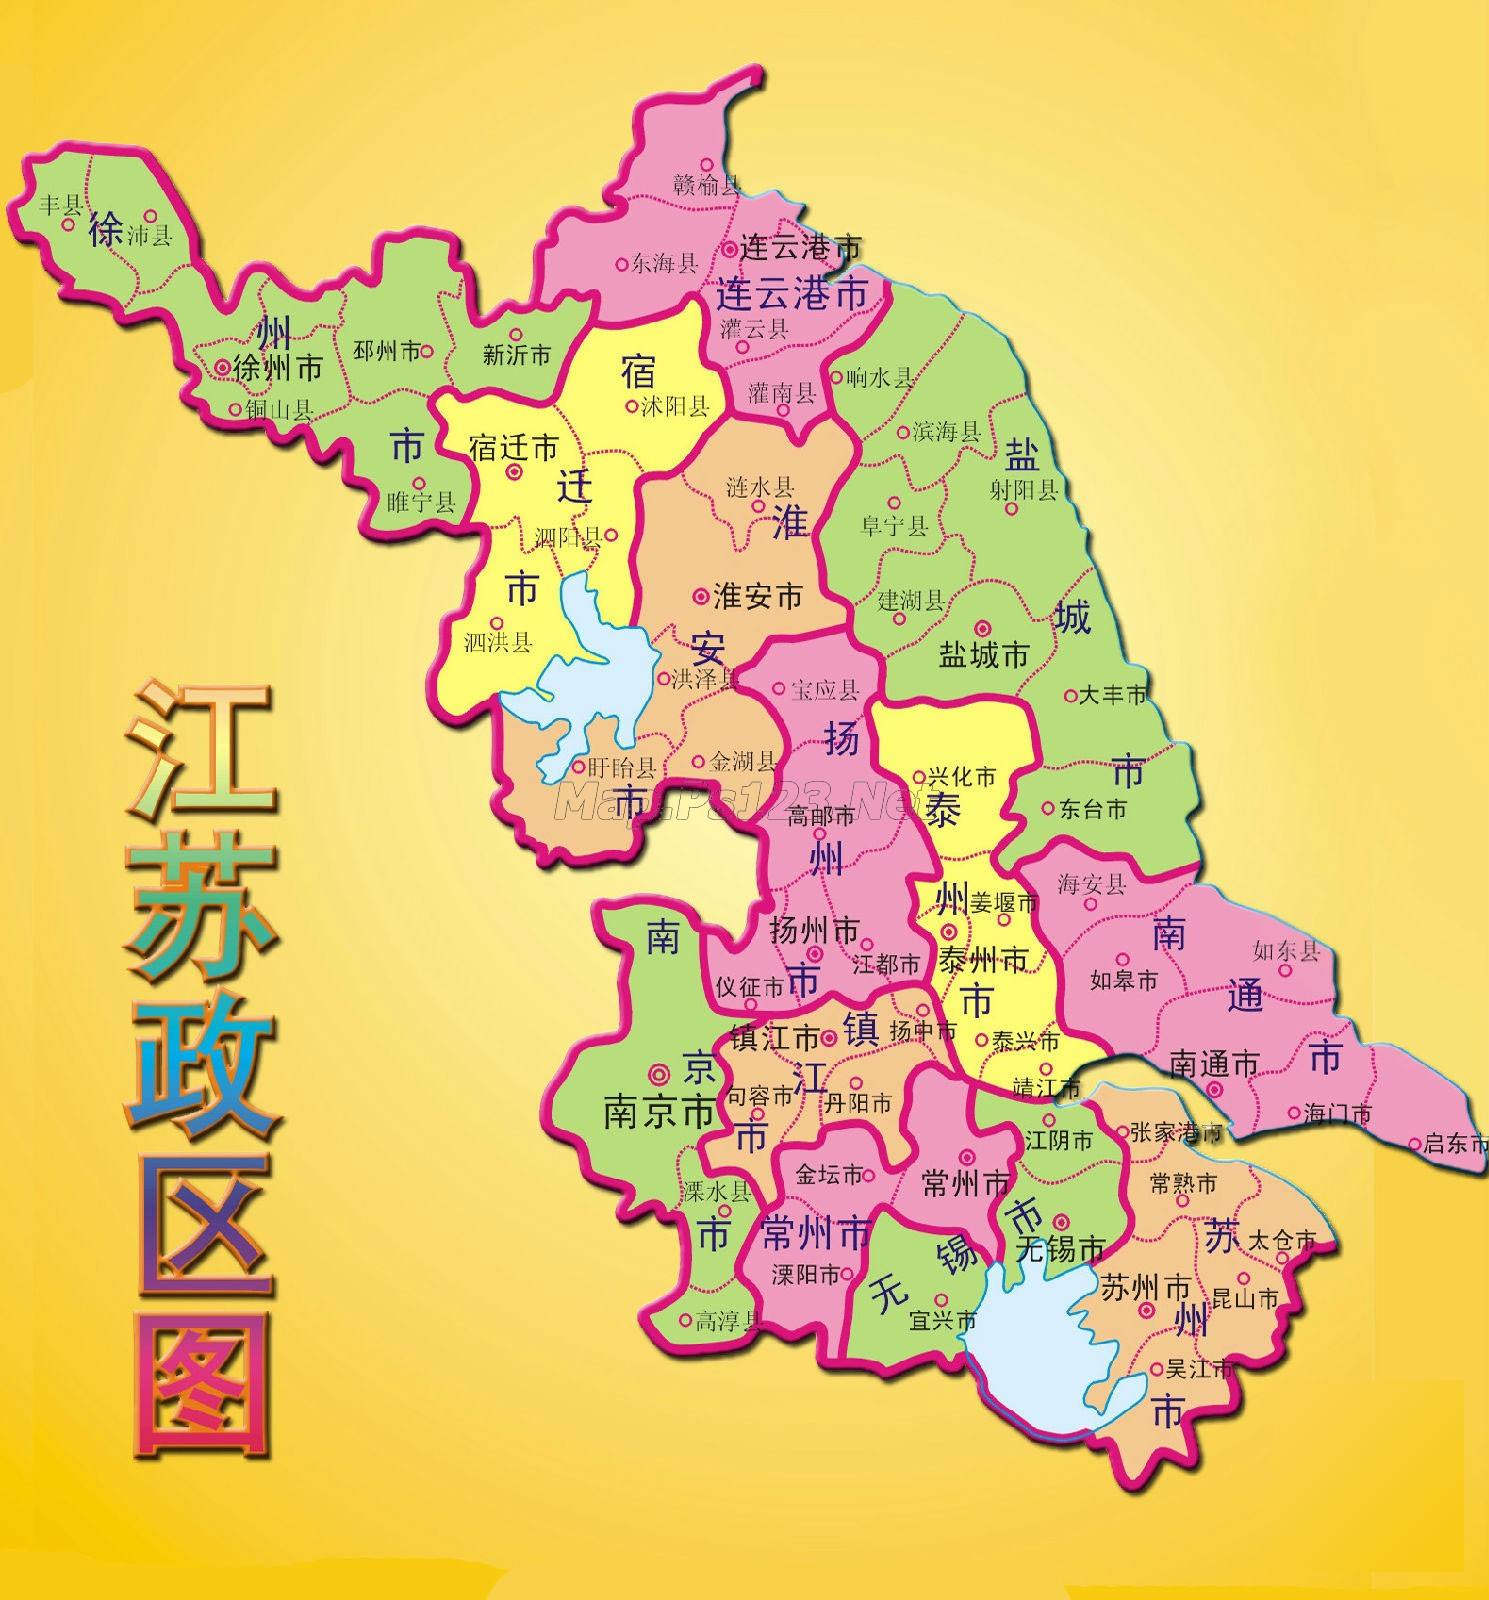 2019全国各省人口排行_杭州金华台州地图图片